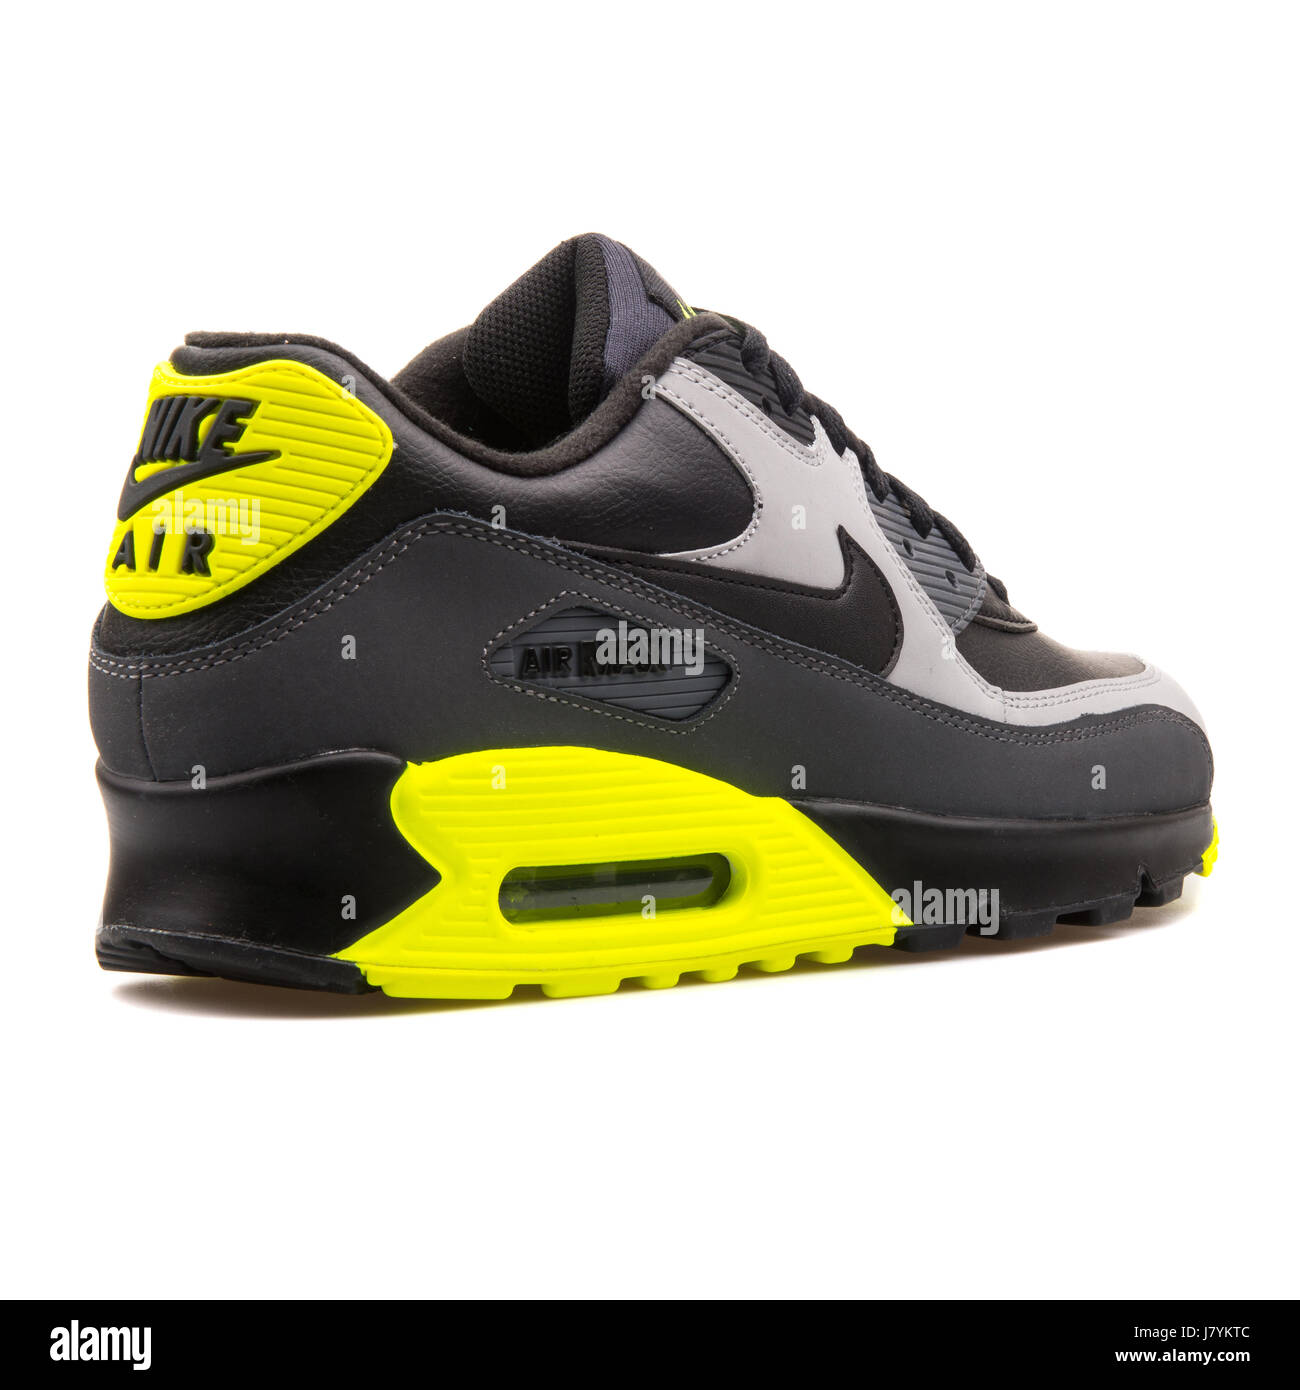 La Internet Examinar detenidamente Espere Nike Air Max 90 LTR Negro gris y amarillo hombres zapatillas deportivas -  652980-007 Fotografía de stock - Alamy